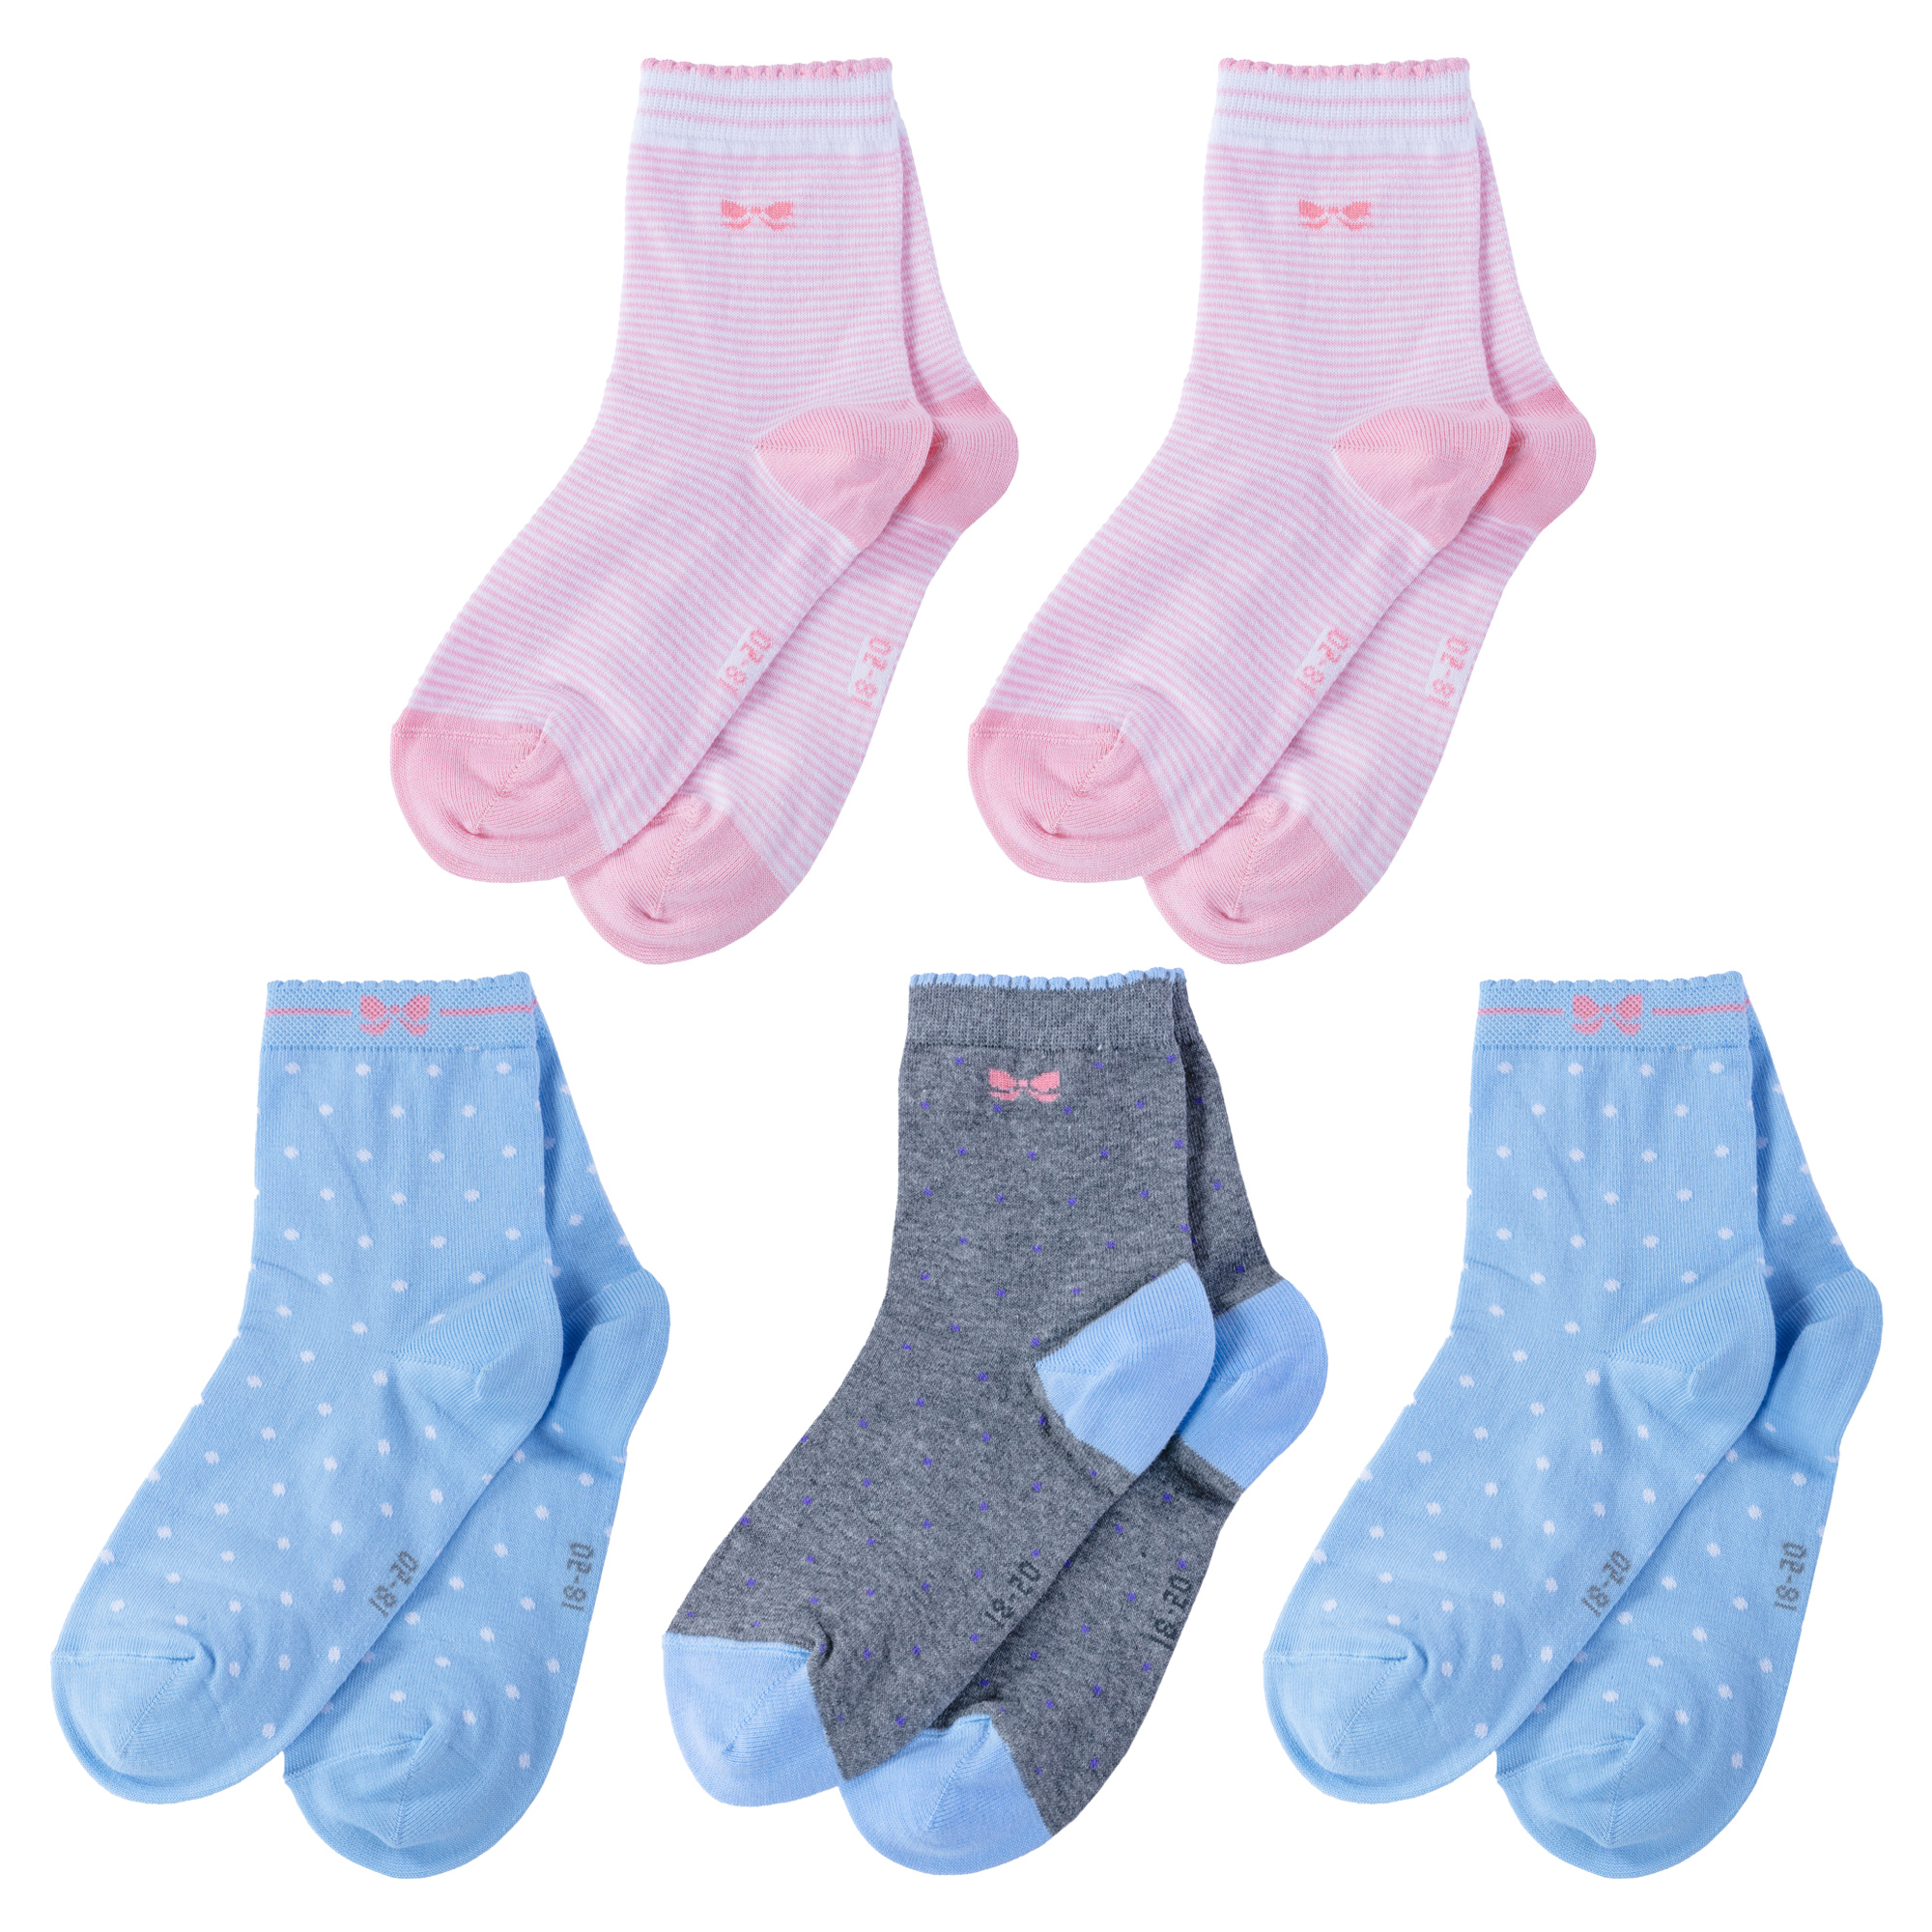 Носки детские LorenzLine 5-Л105, розовый; голубой; серый, 18-20